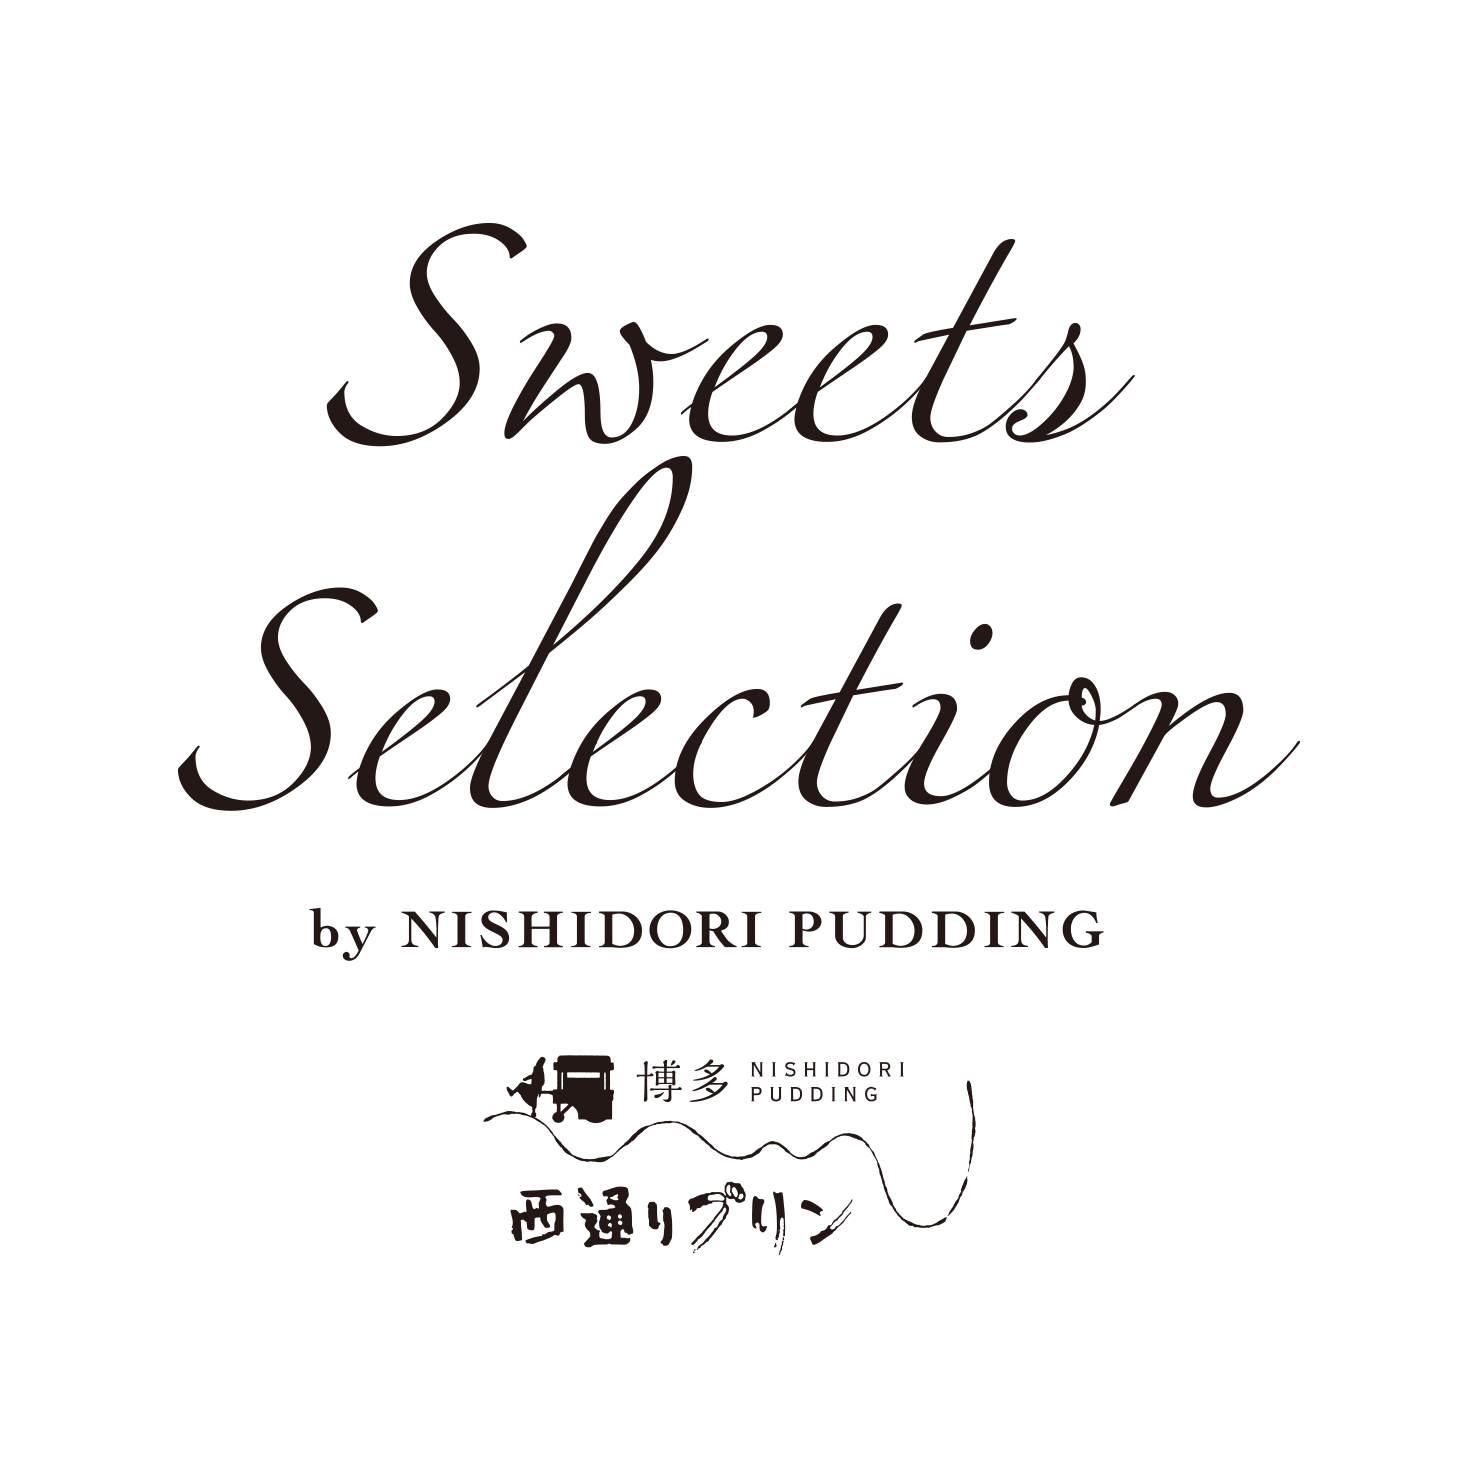 Sweets selection by NISHIDORI PUDDING